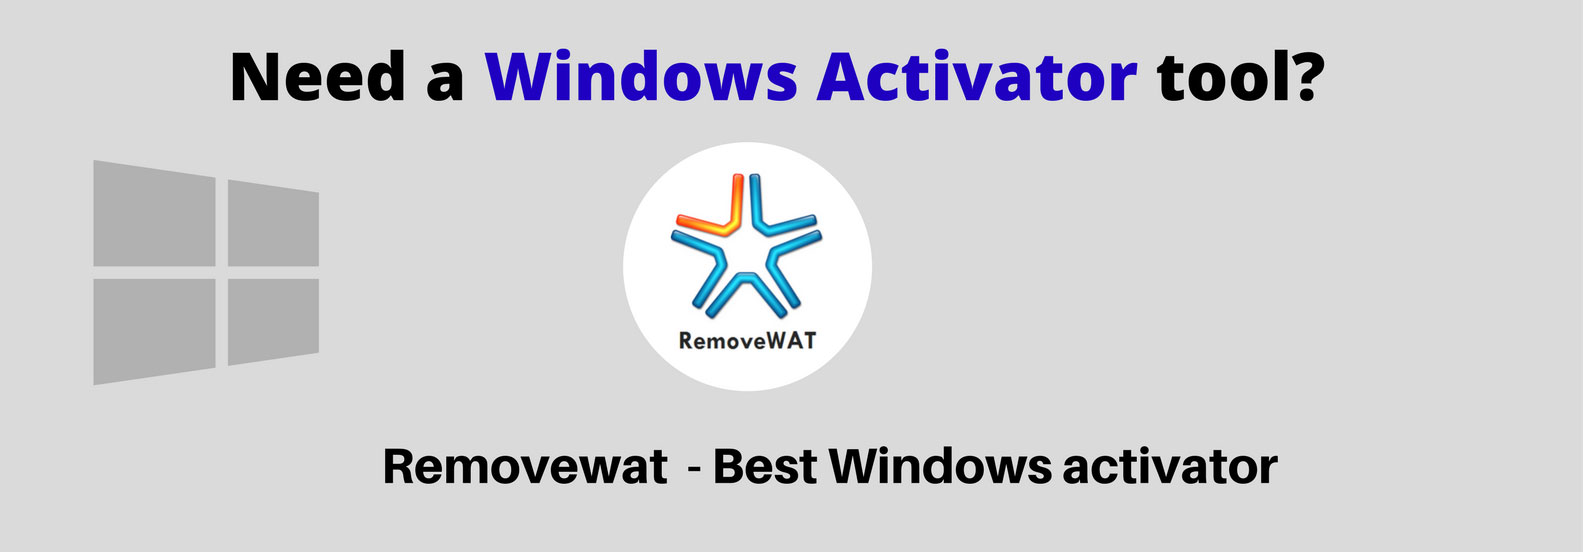 removewat 2.2.6 windows 7 gratuit 32 bit